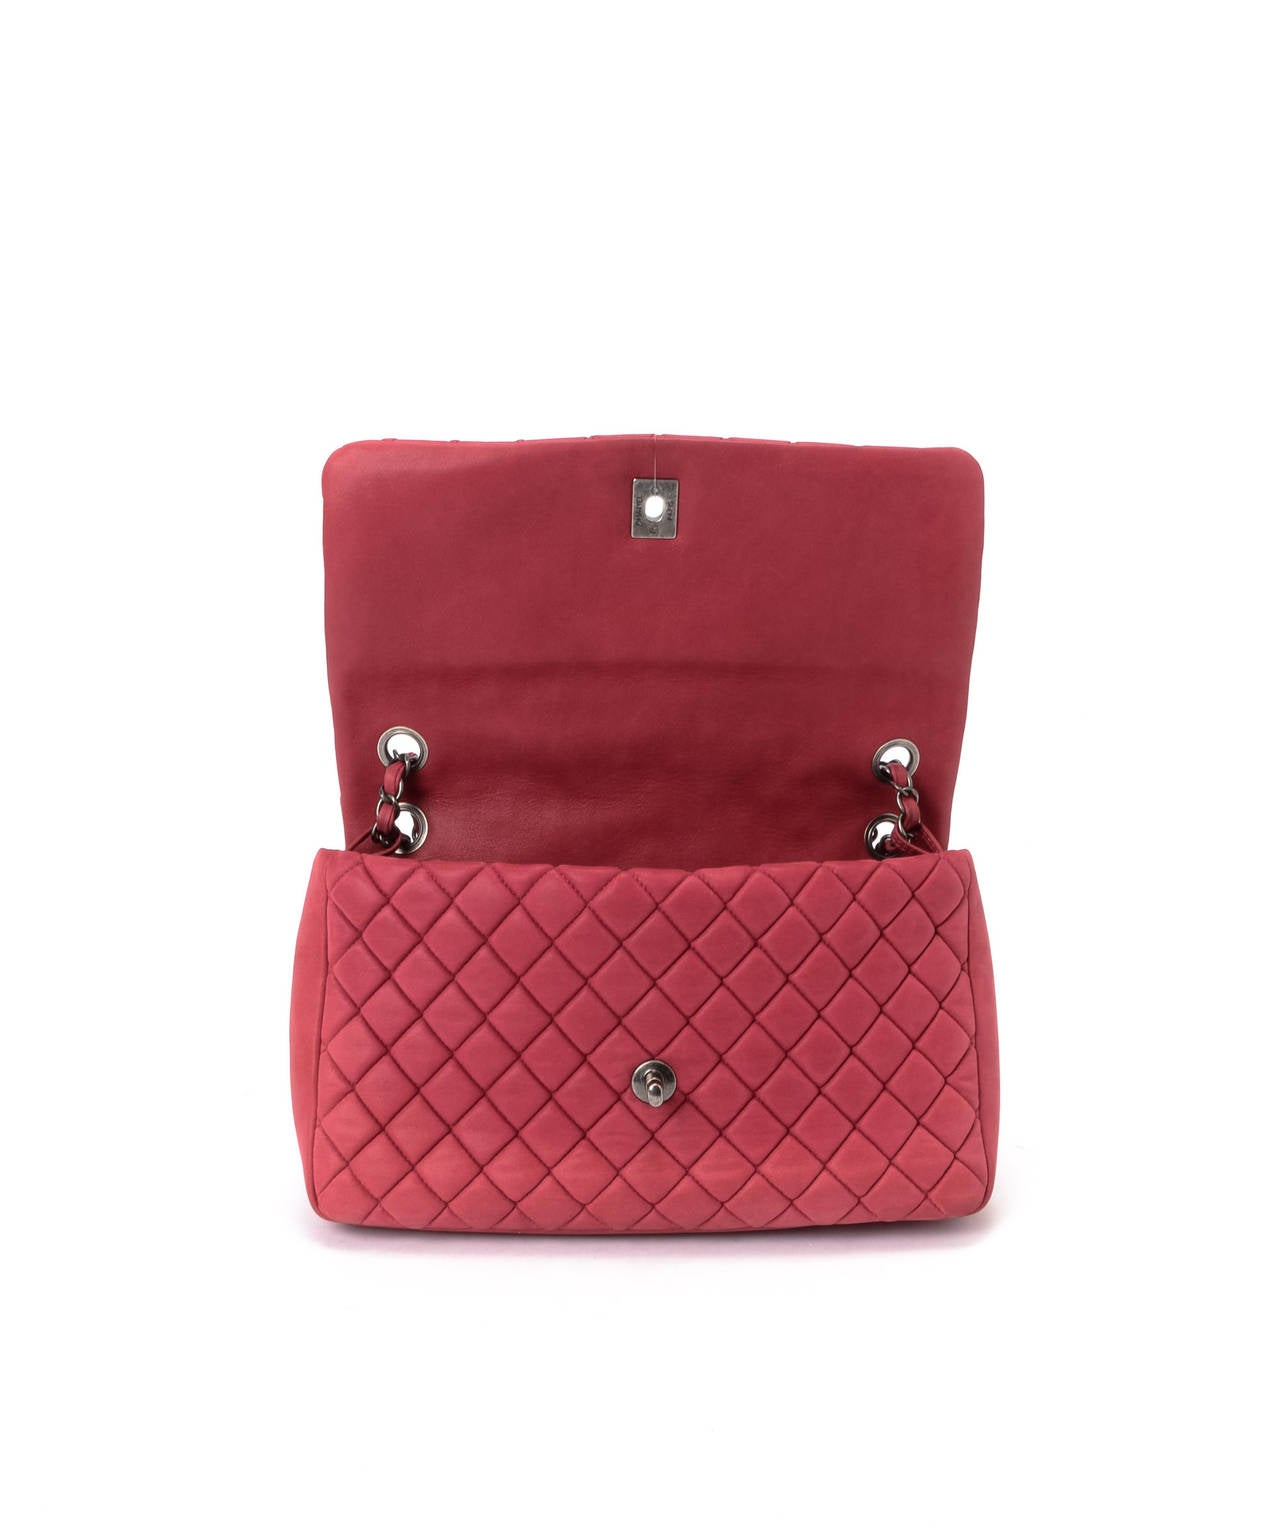 Chanel Bubble Flap Bag 2